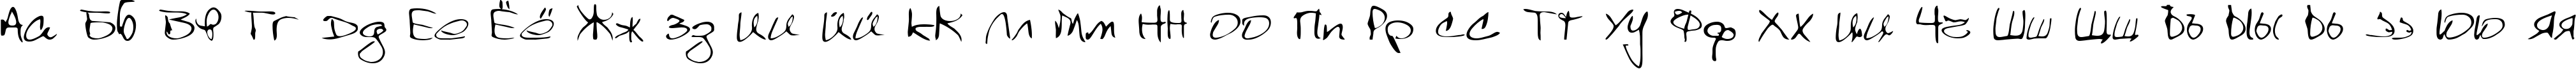 Пример написания русского алфавита шрифтом Scrawl